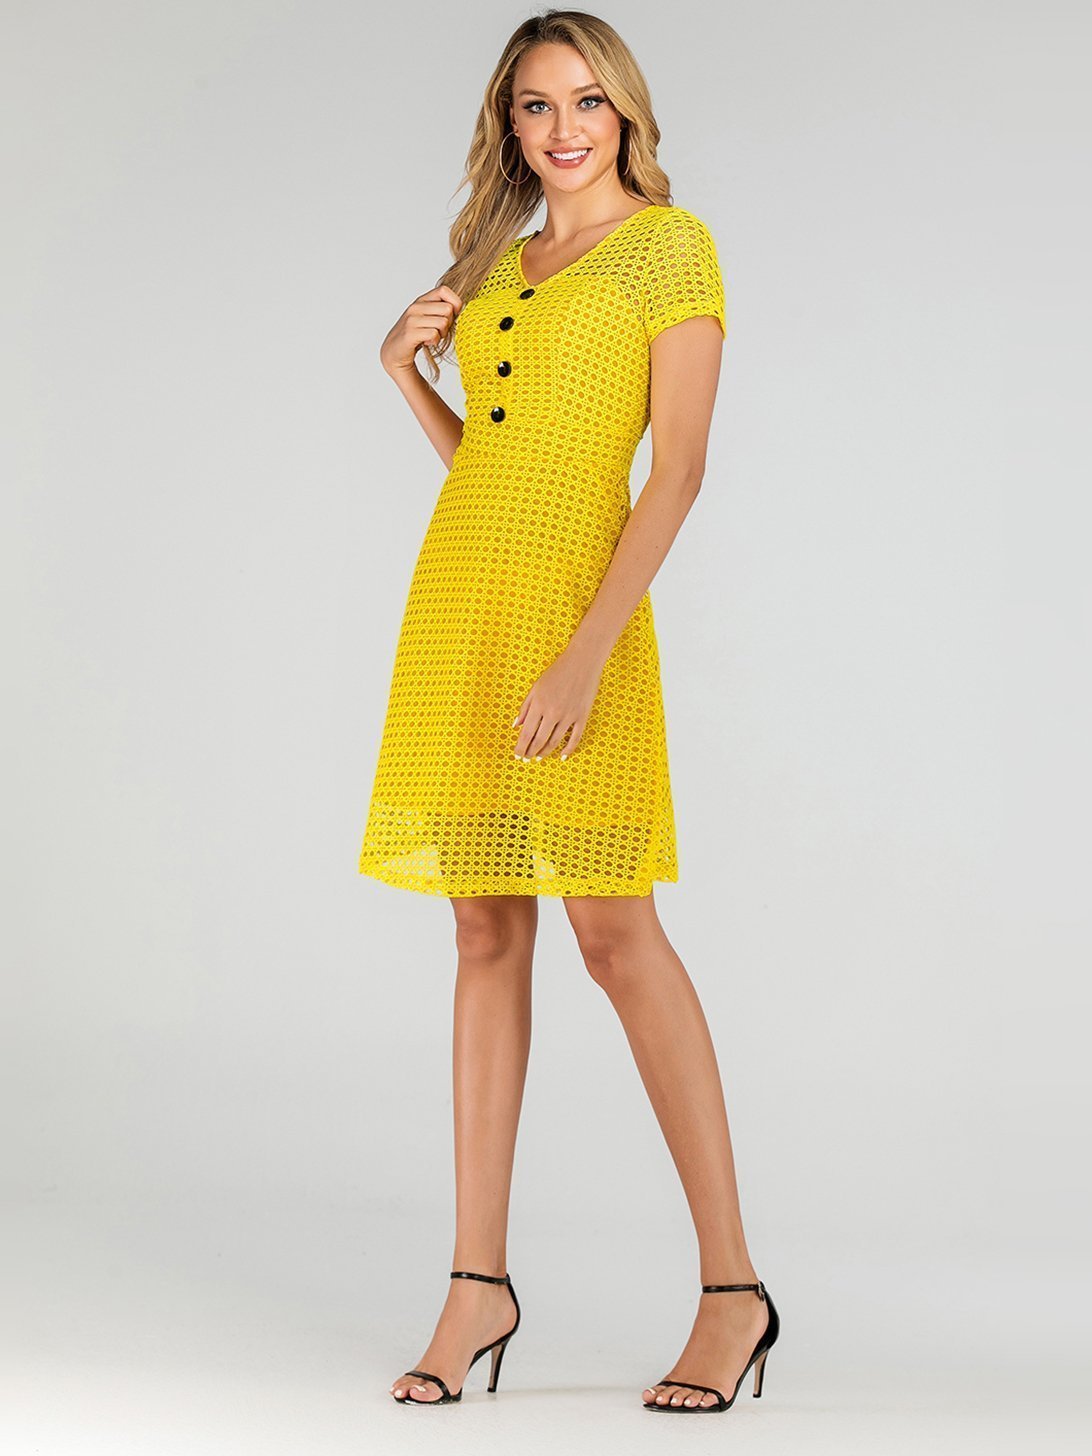 Bella Fancy Dresses US Western Wear Hot Sale Hollow Out Short Sleeve Yellow Dress